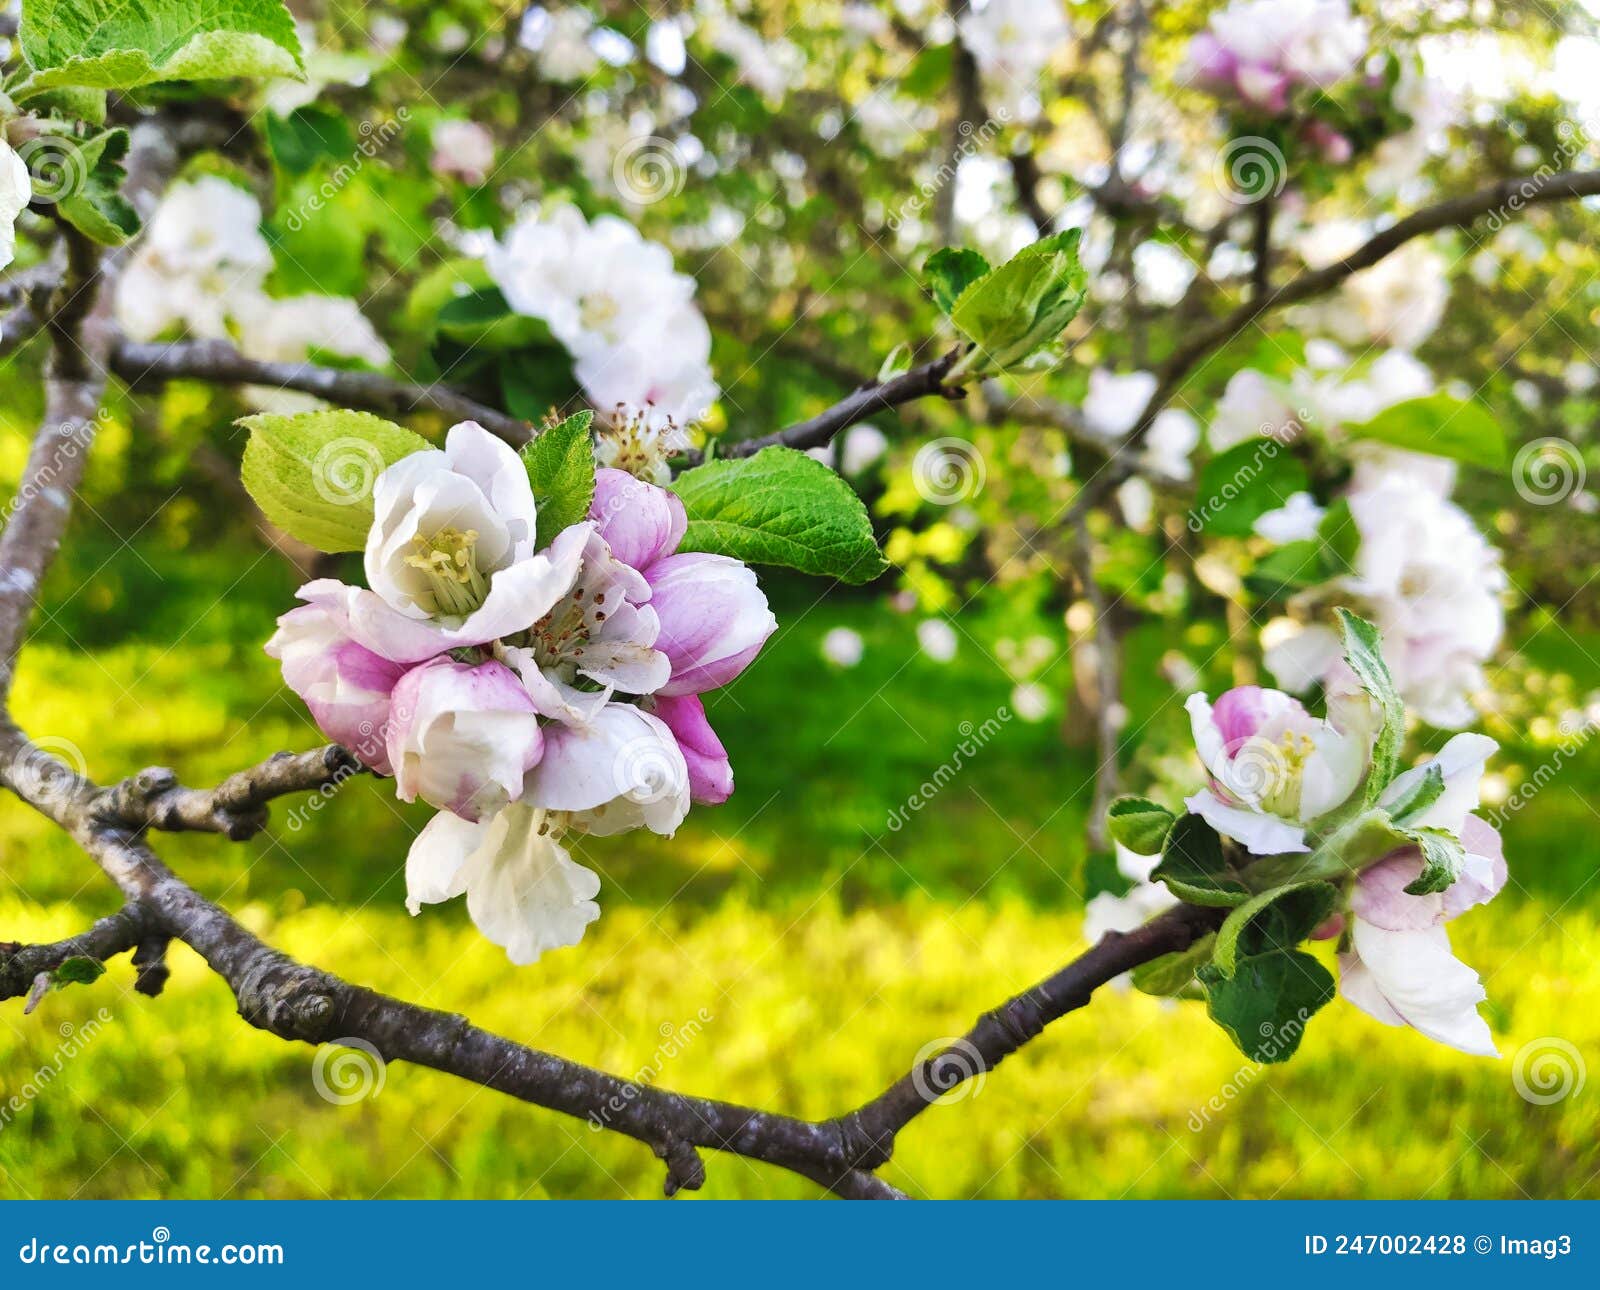 blooming apple tree in spring time near nava vilage, comarca de la sidra, asturias, spain